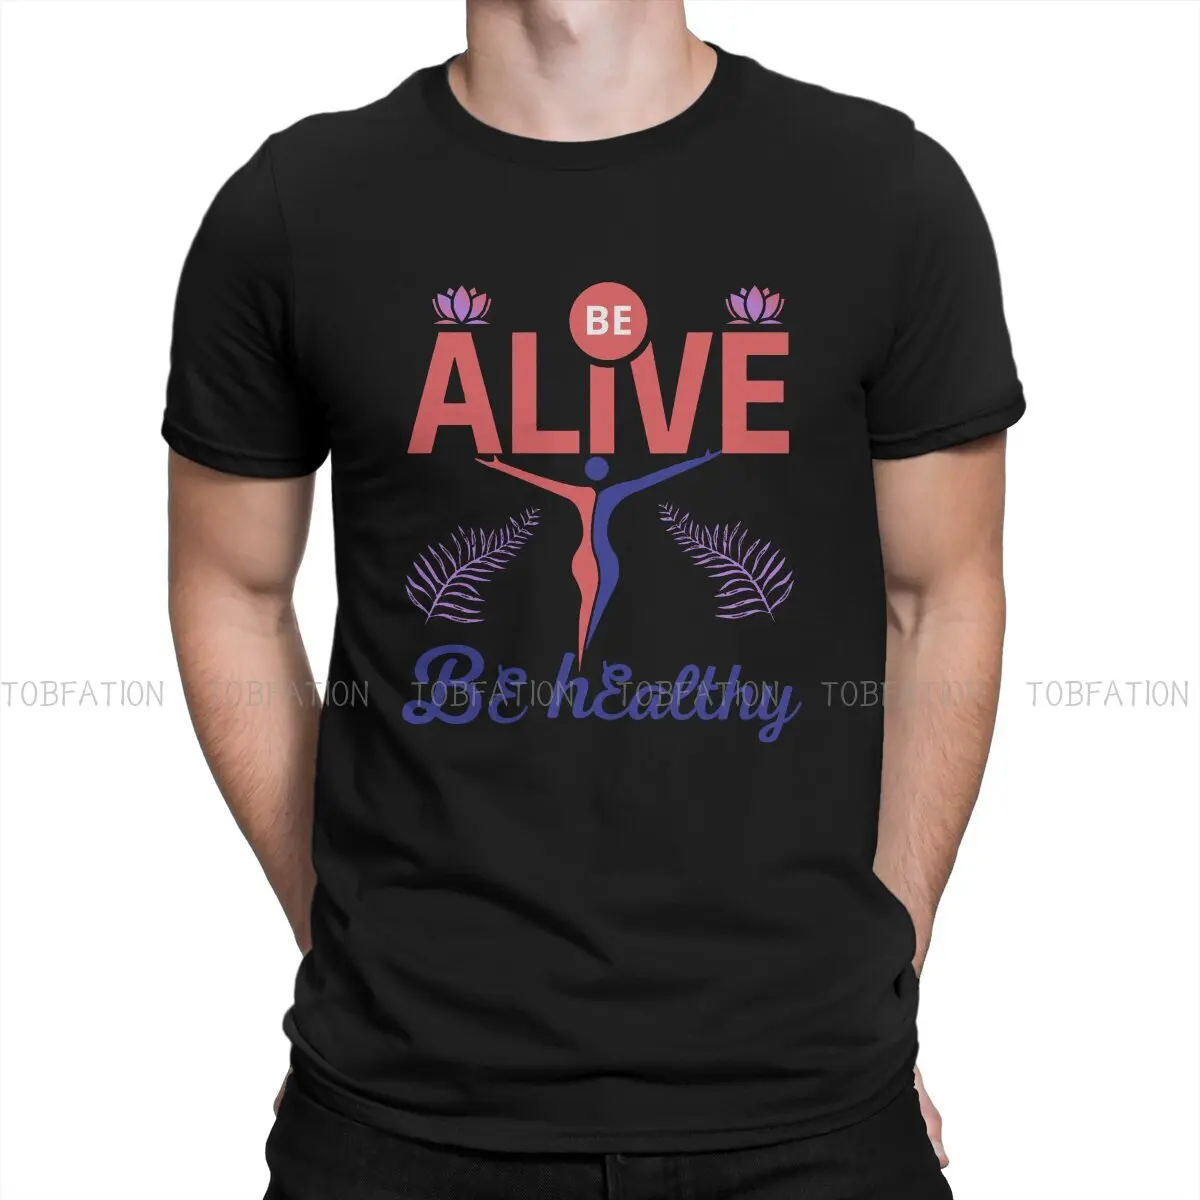 Новые футболки Alive для тренажерных залов и фитнес-тренировок, топы из ткани в стиле здоровых мужчин, футболка с круглым вырезом 